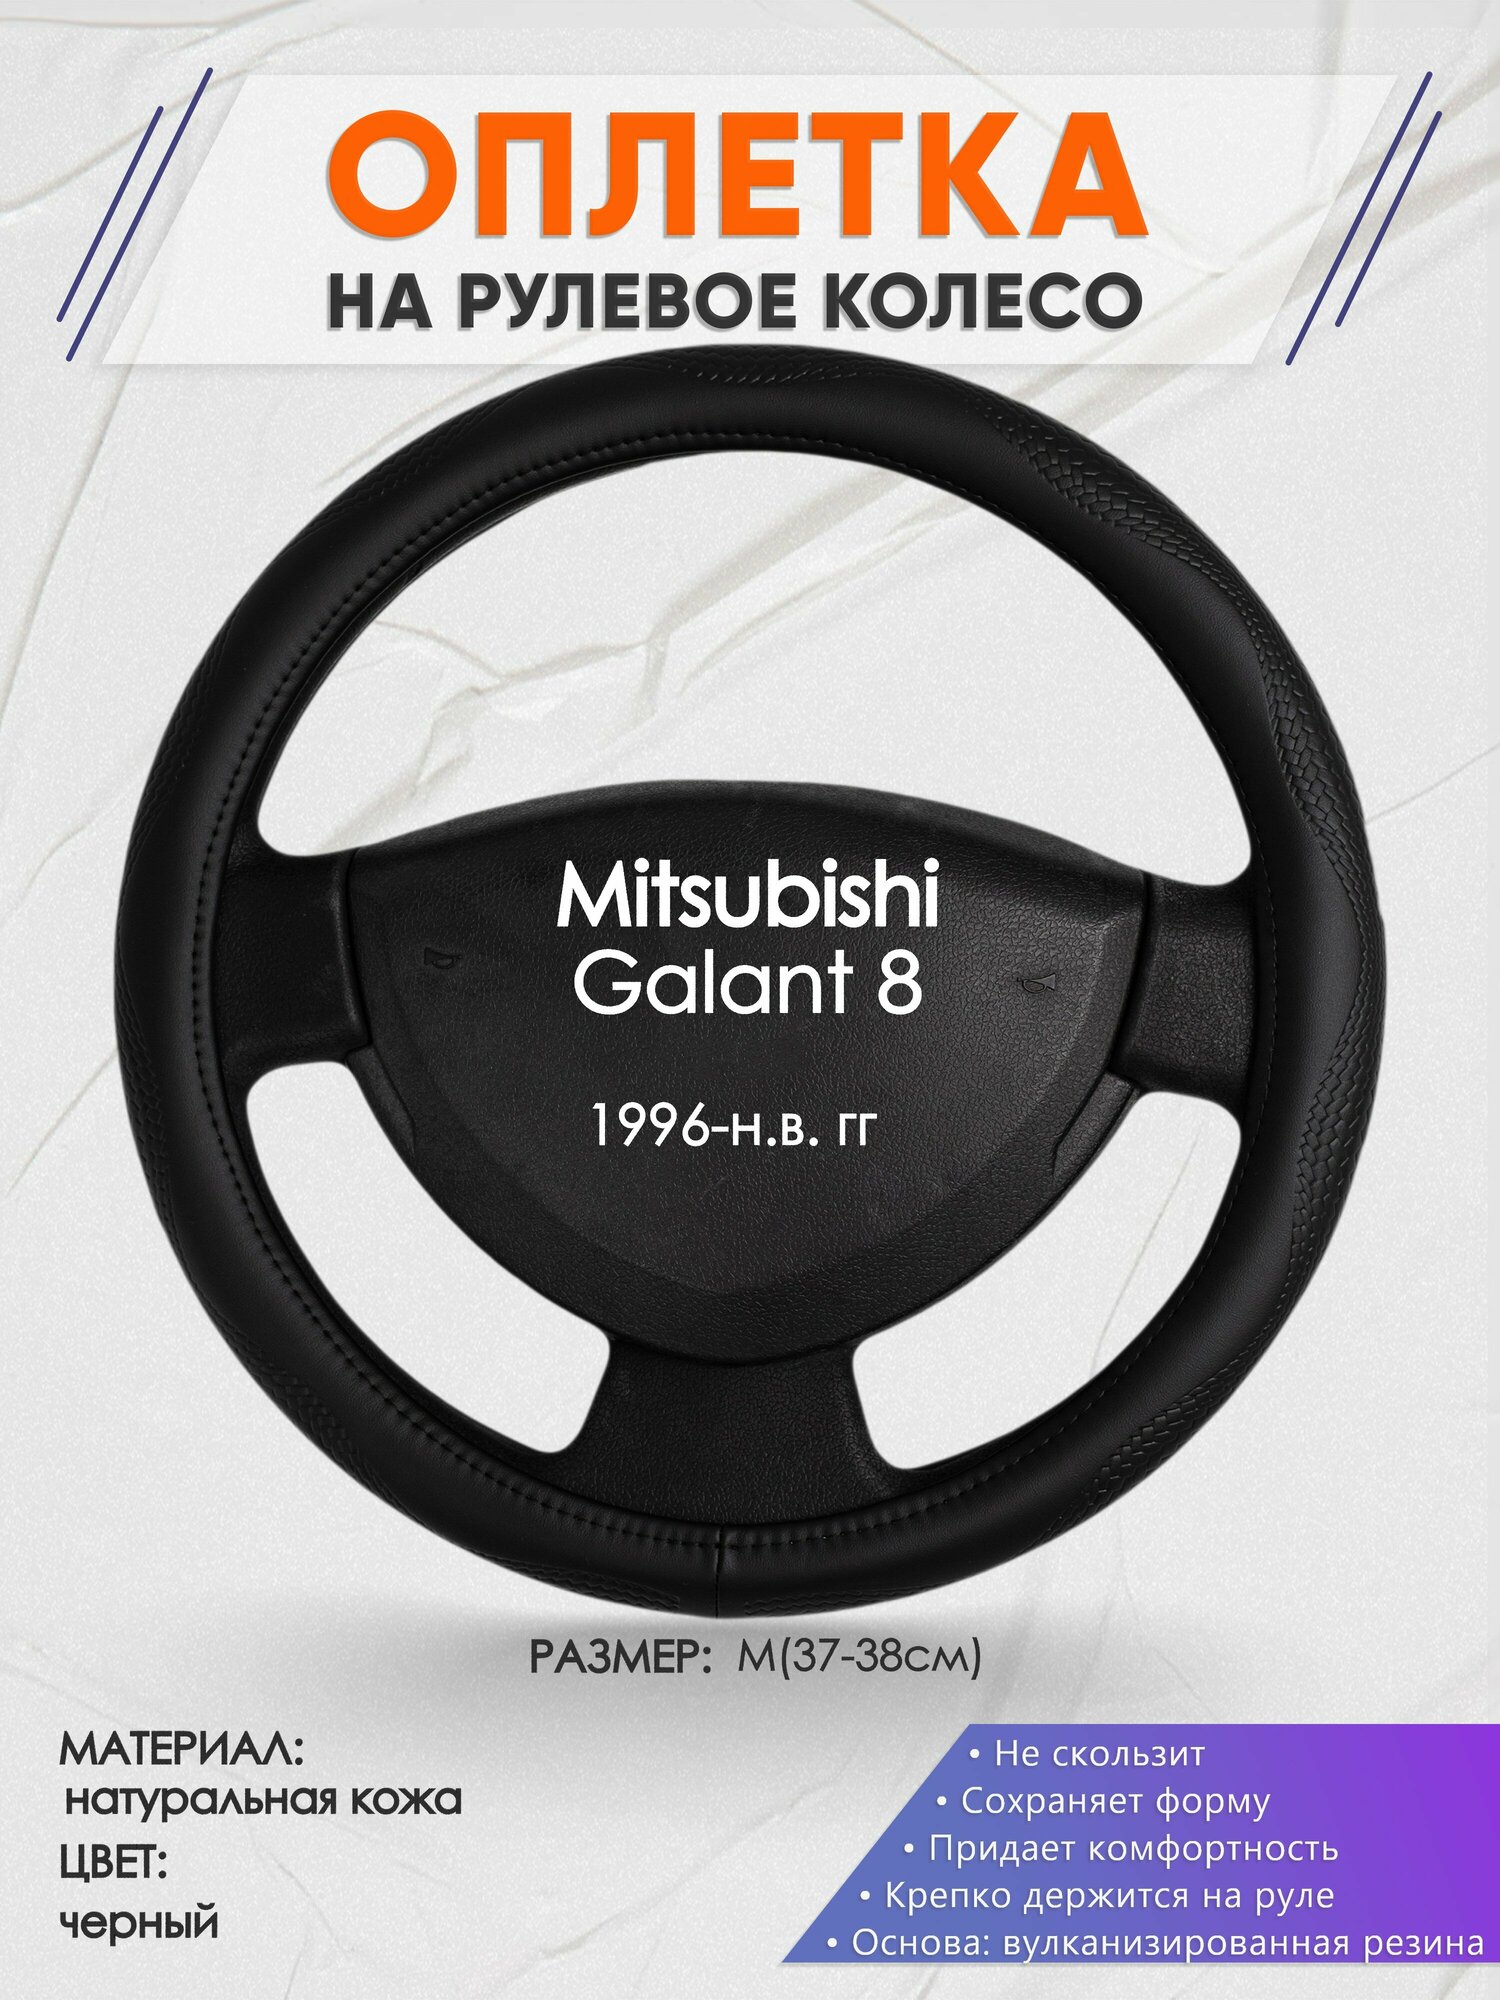 Оплетка на руль для Mitsubishi Galant 8(Митсубиси Галант 8) 1996-н. в M(37-38см) Натуральная кожа 31